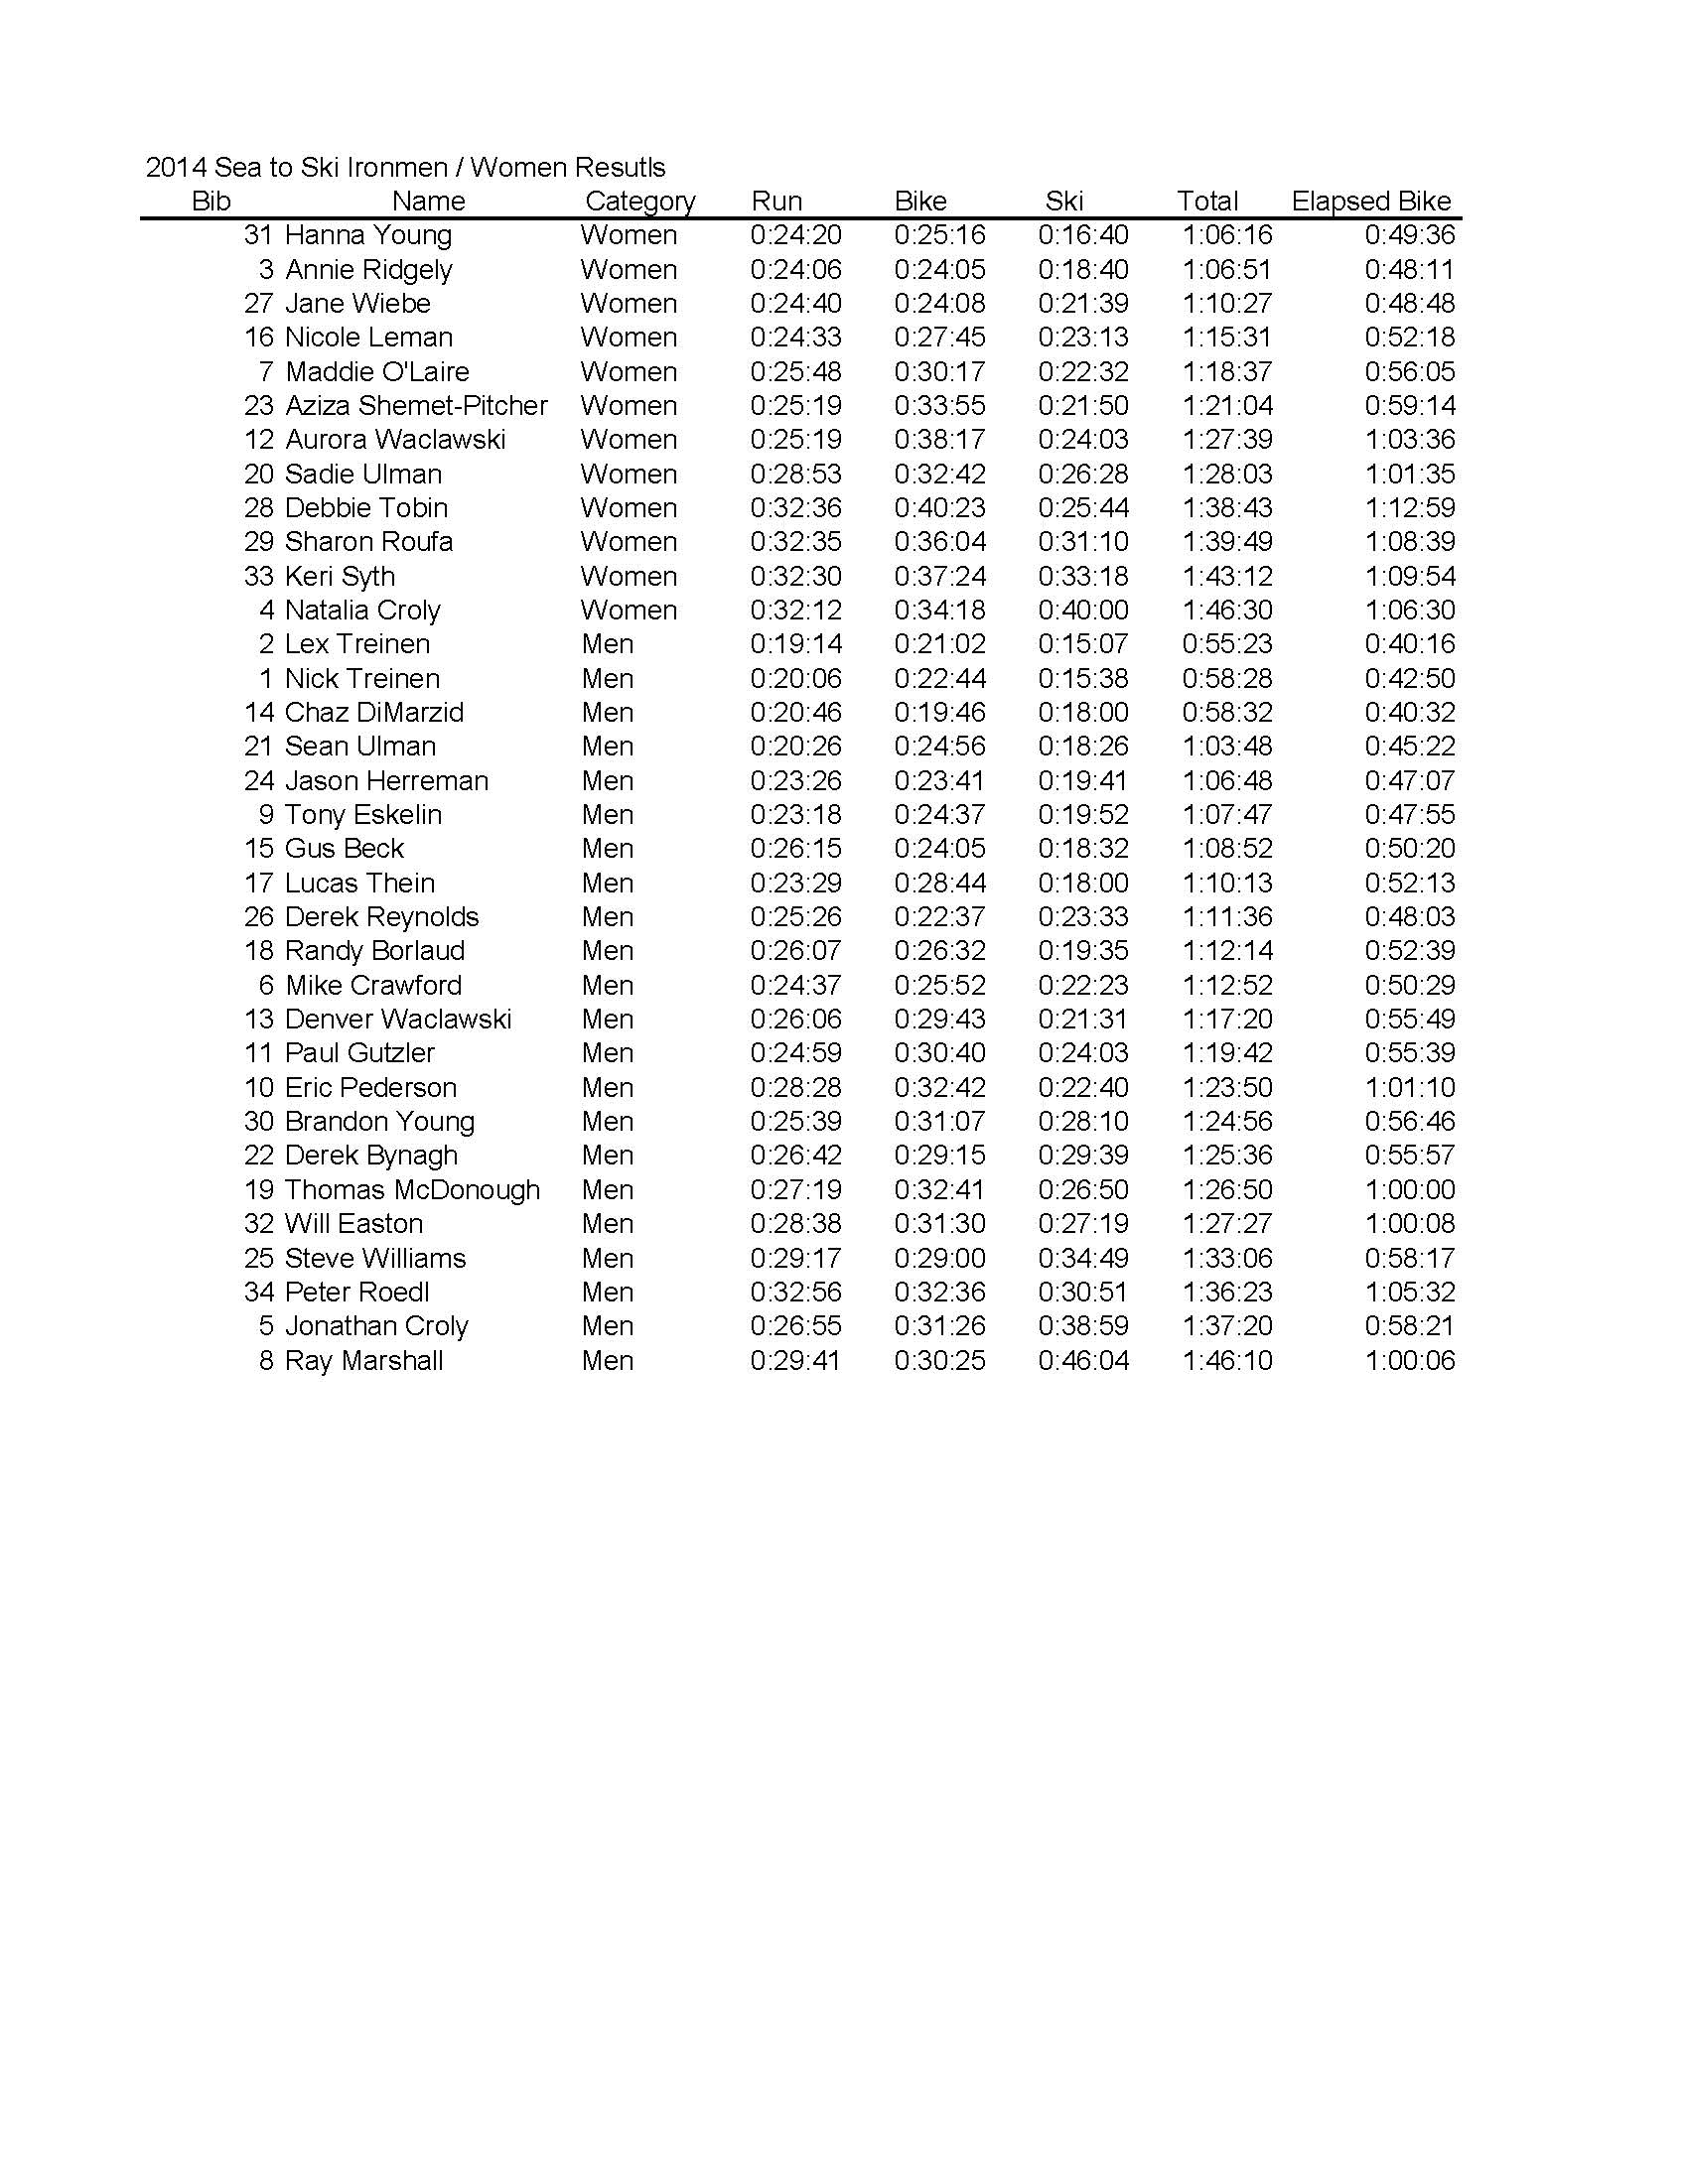 2014 Sea-to-Ski Iron Men and Women Results